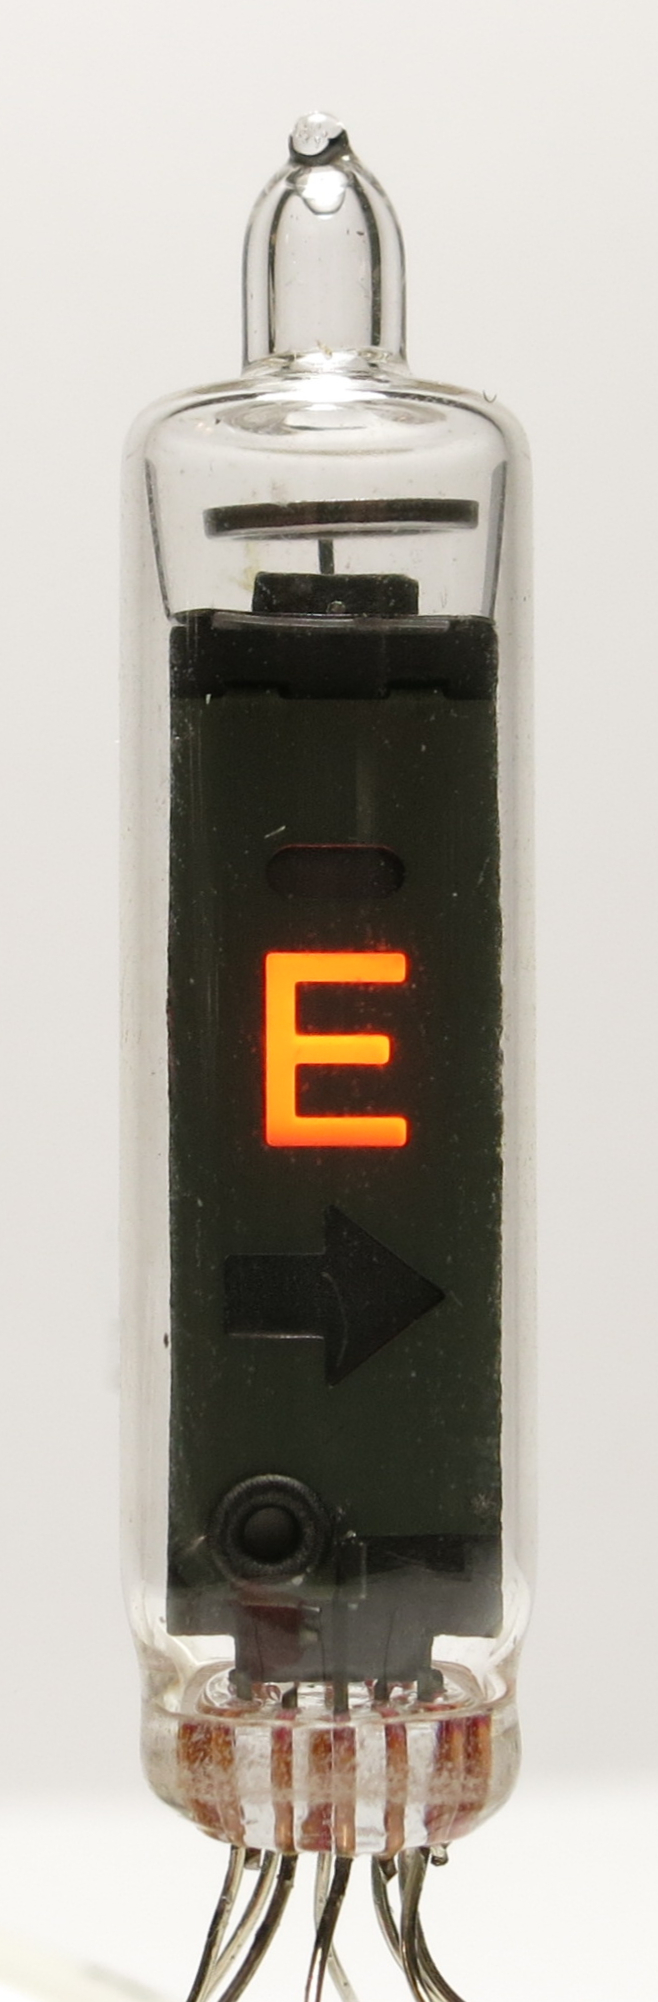 Das Symbol 'E' der LD-8043